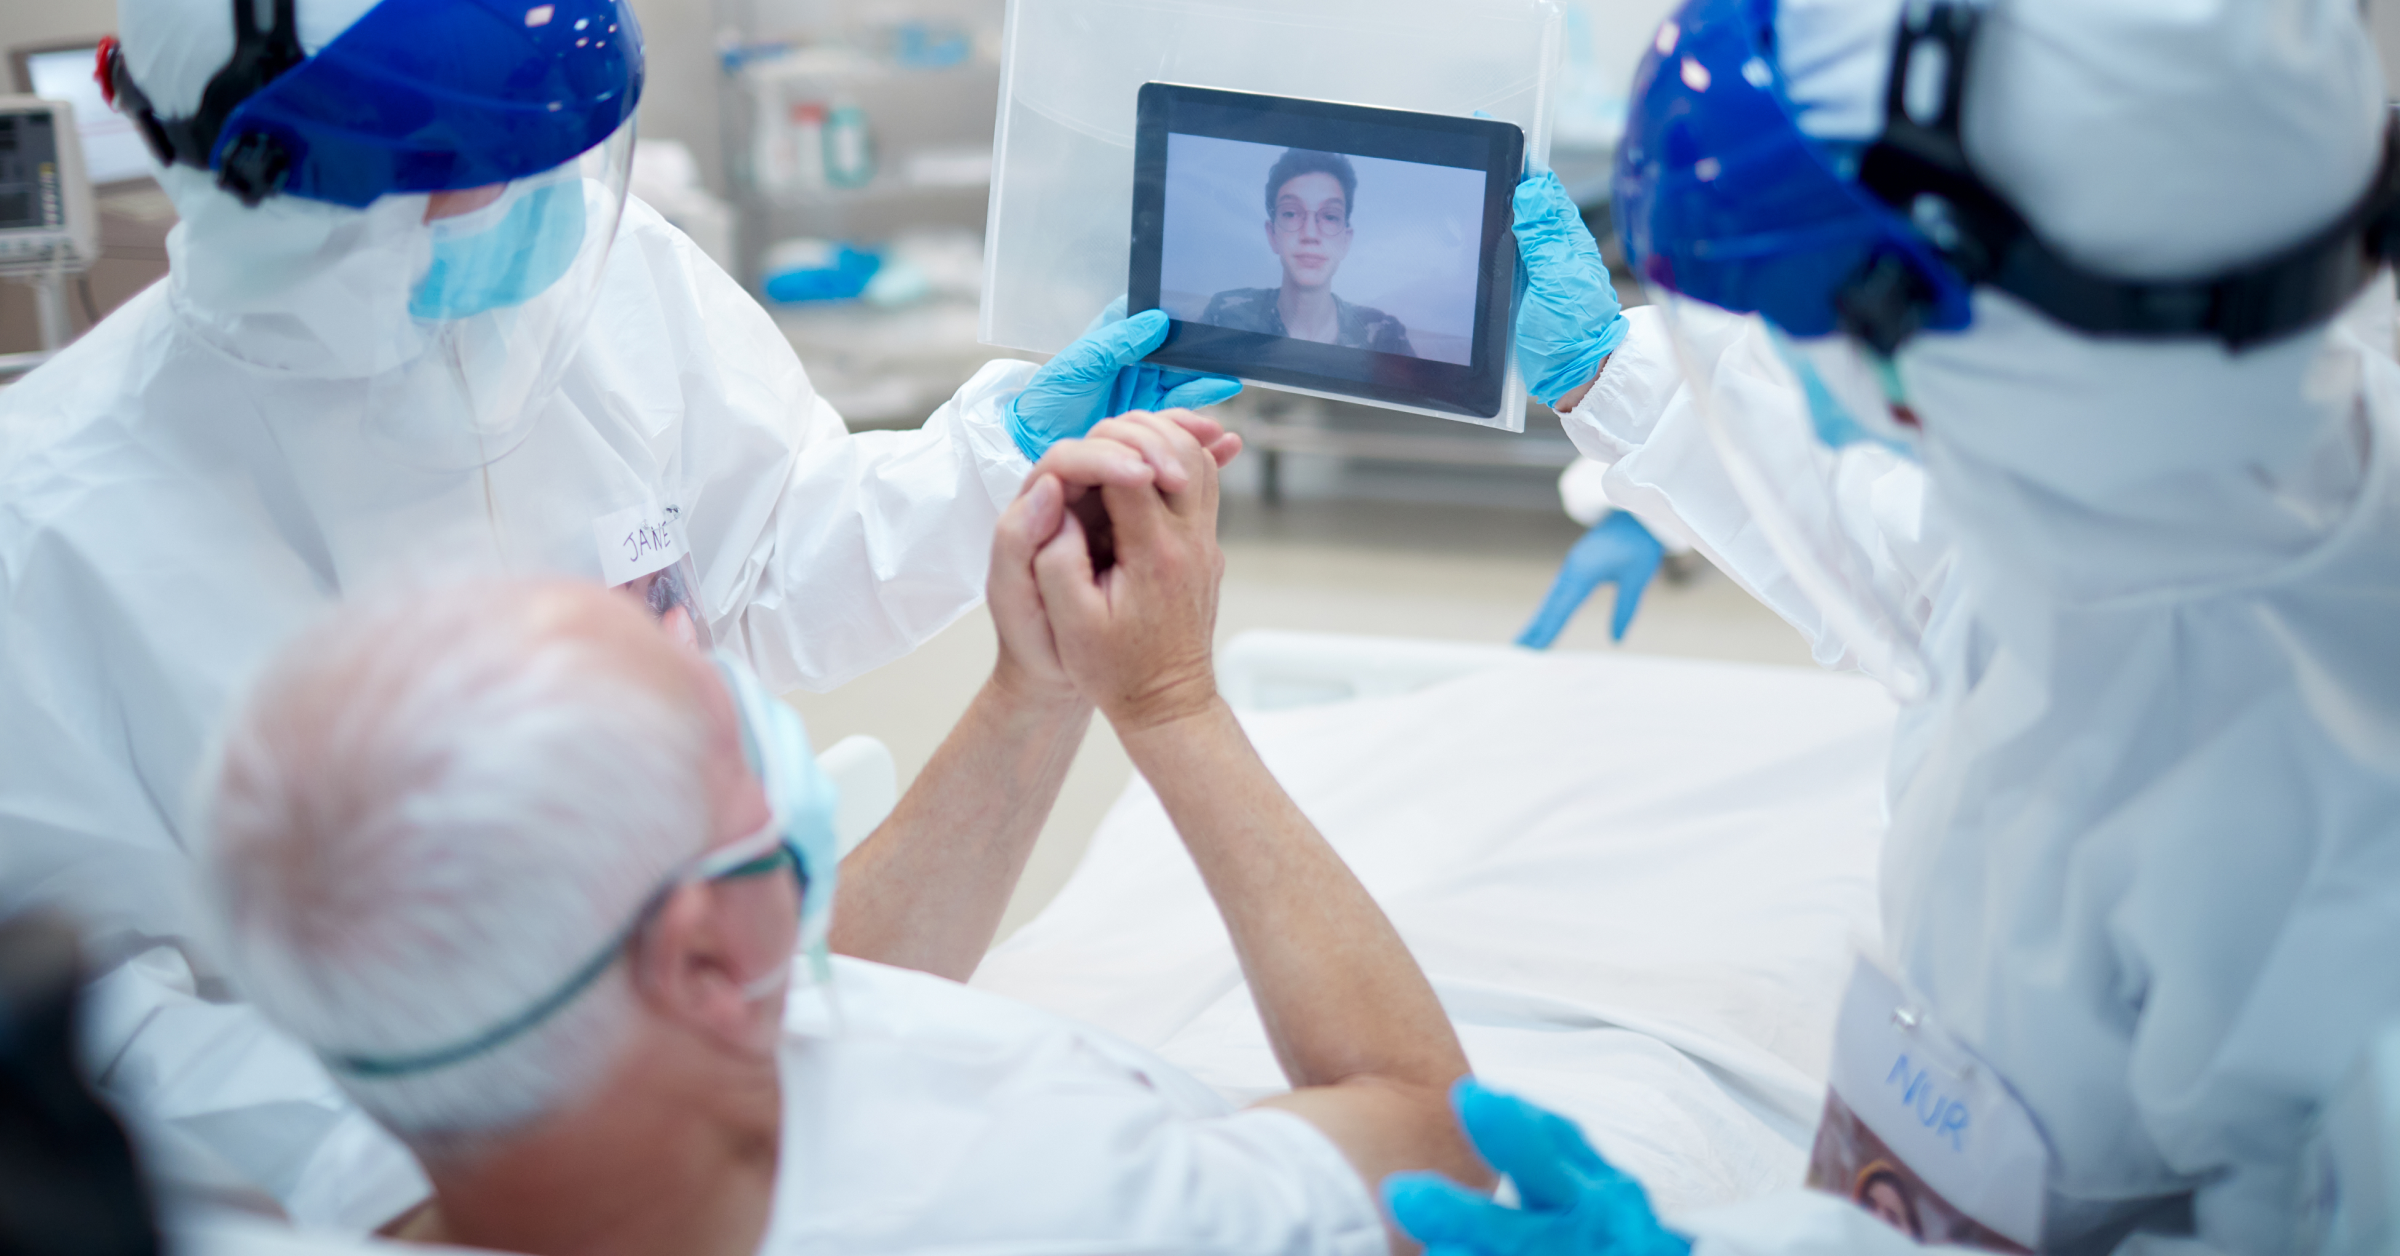 Zwei Fachkräfte in Schutzkleidung halten ein Tablet, damit ein Patient mit einer nahestehenden Person ein Videotelefonat führen kann.